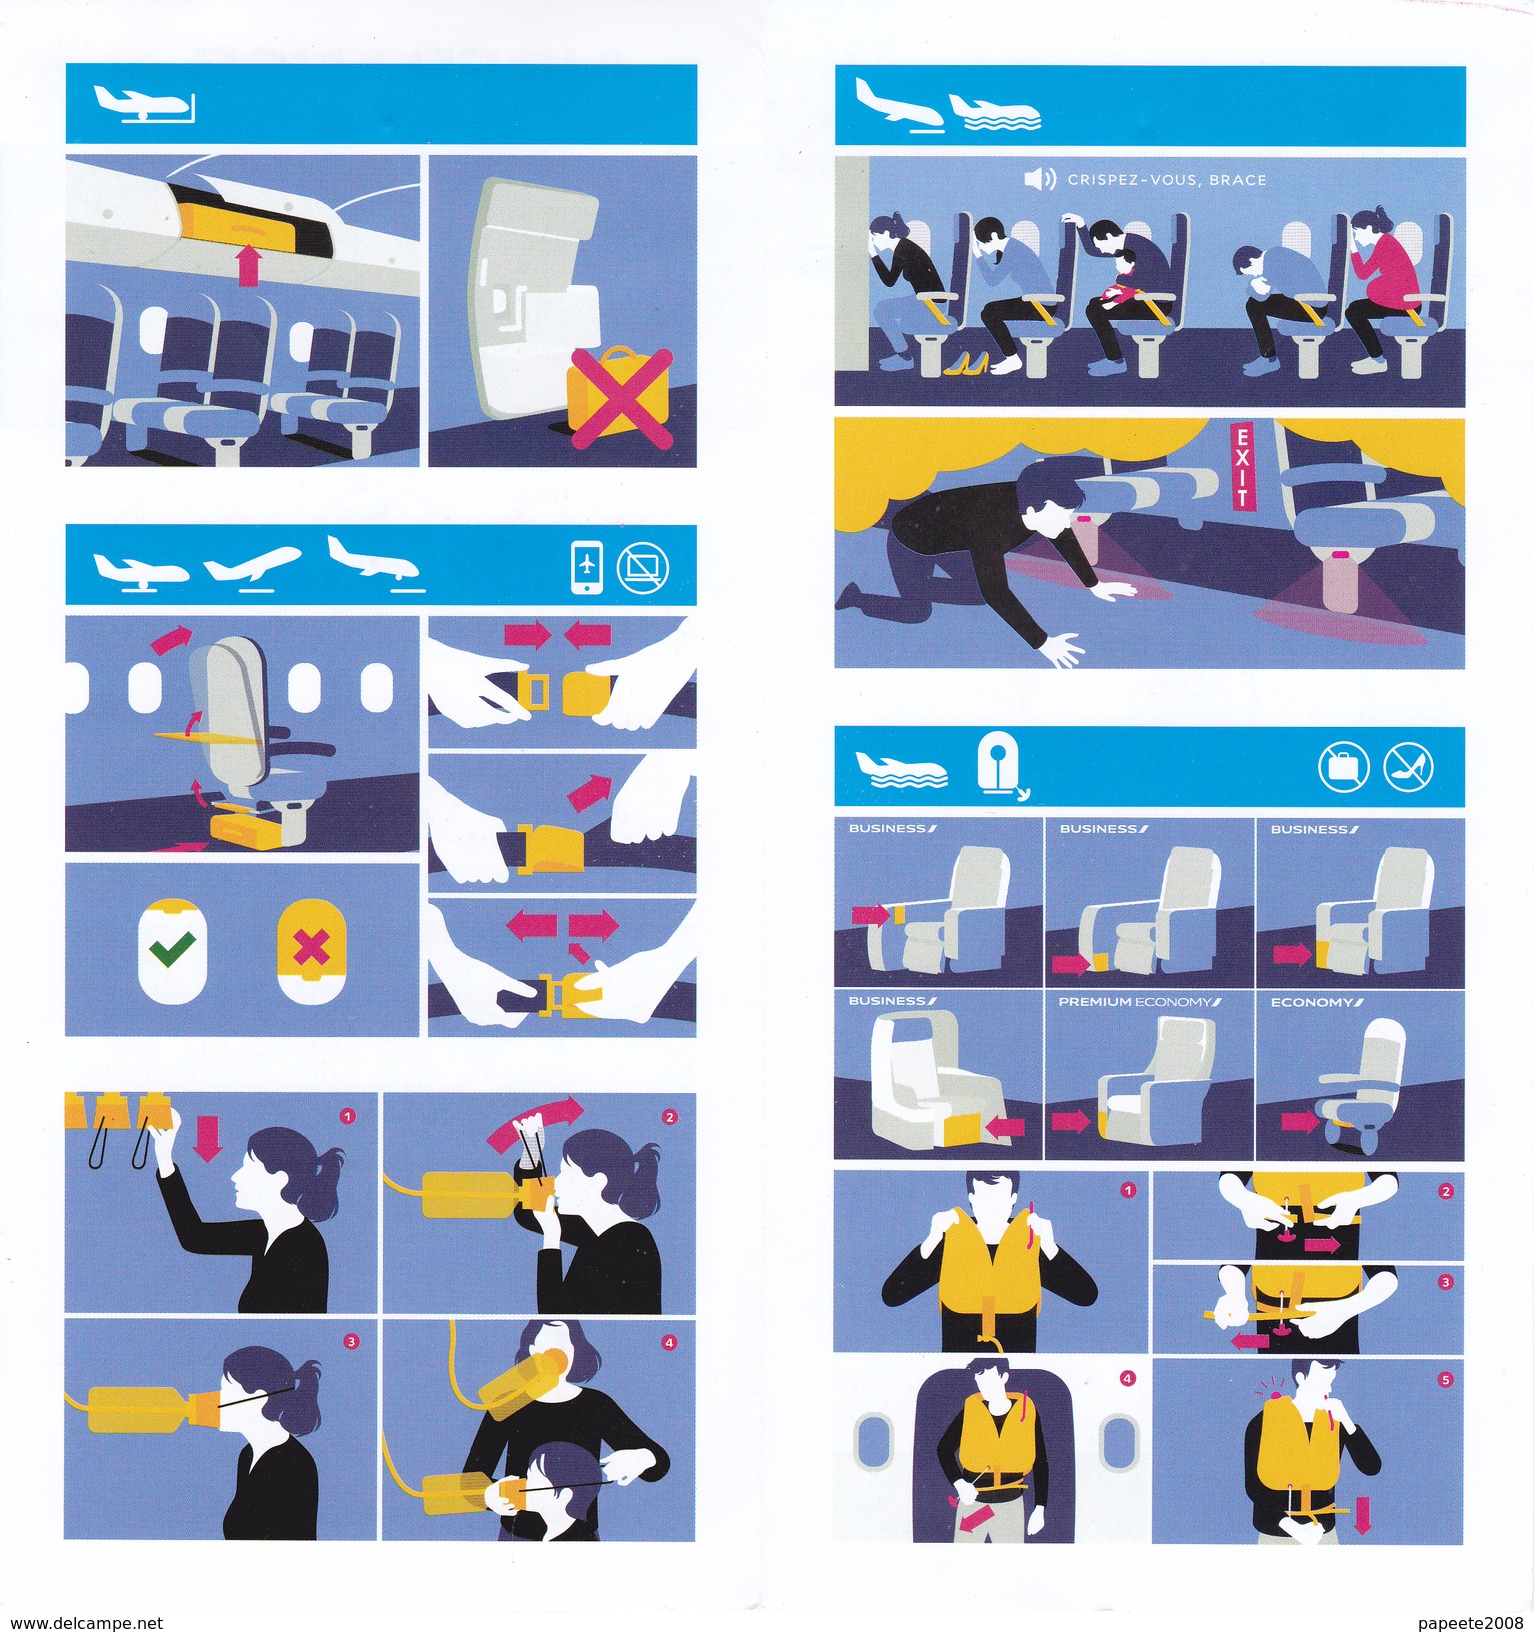 Air France/ Boeing 777 200 - 06/2016 - Consignes De Sécurité / Safety Card - Safety Cards